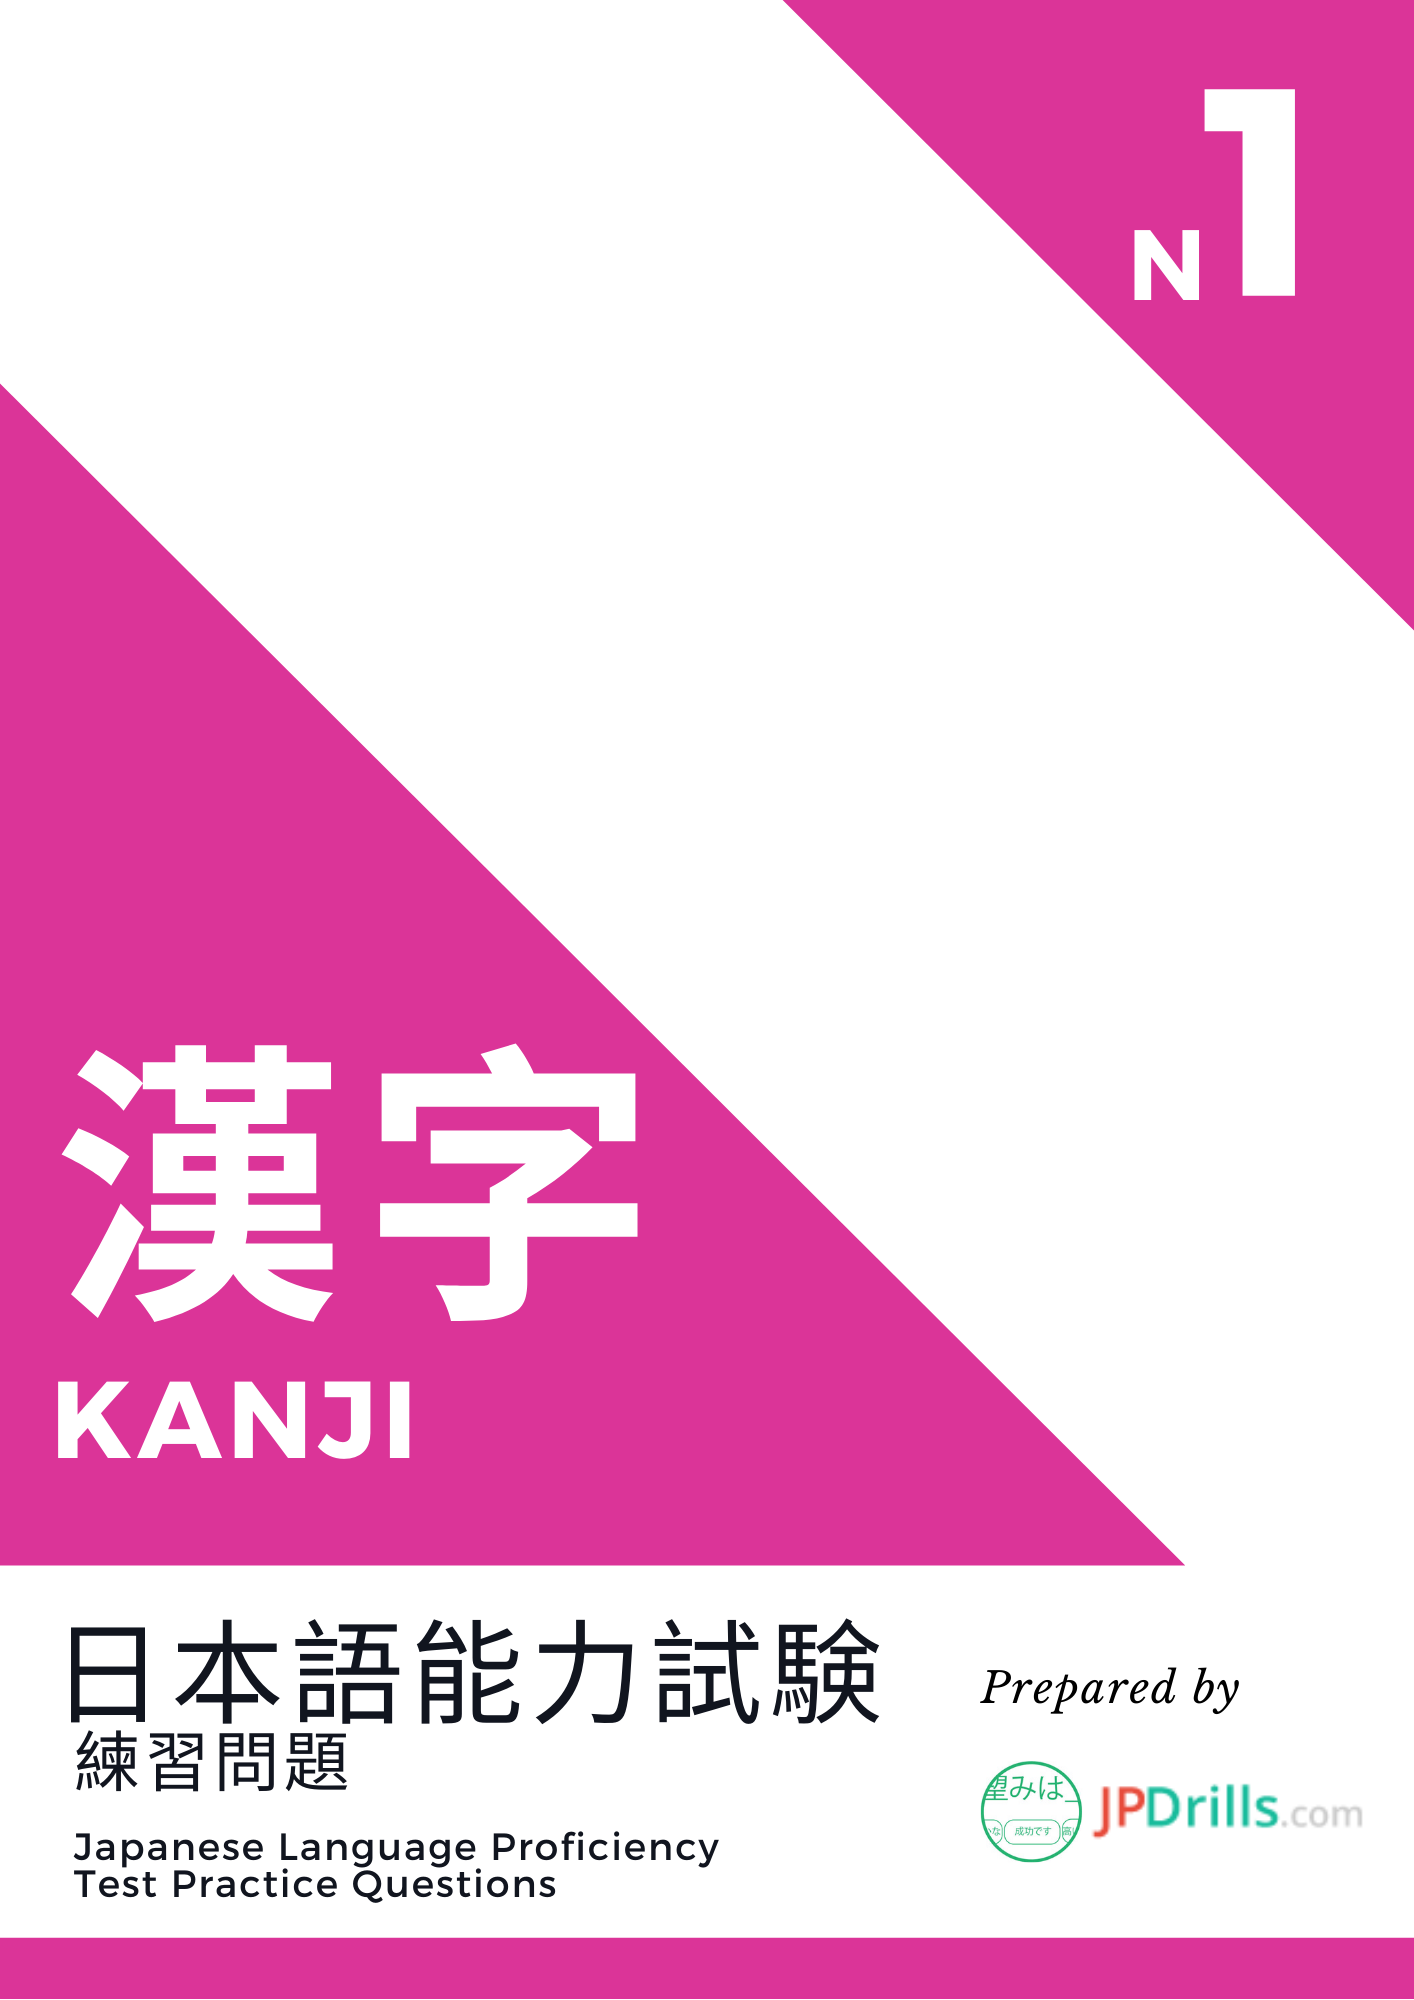 JLPT N1 Kanji quiz logo